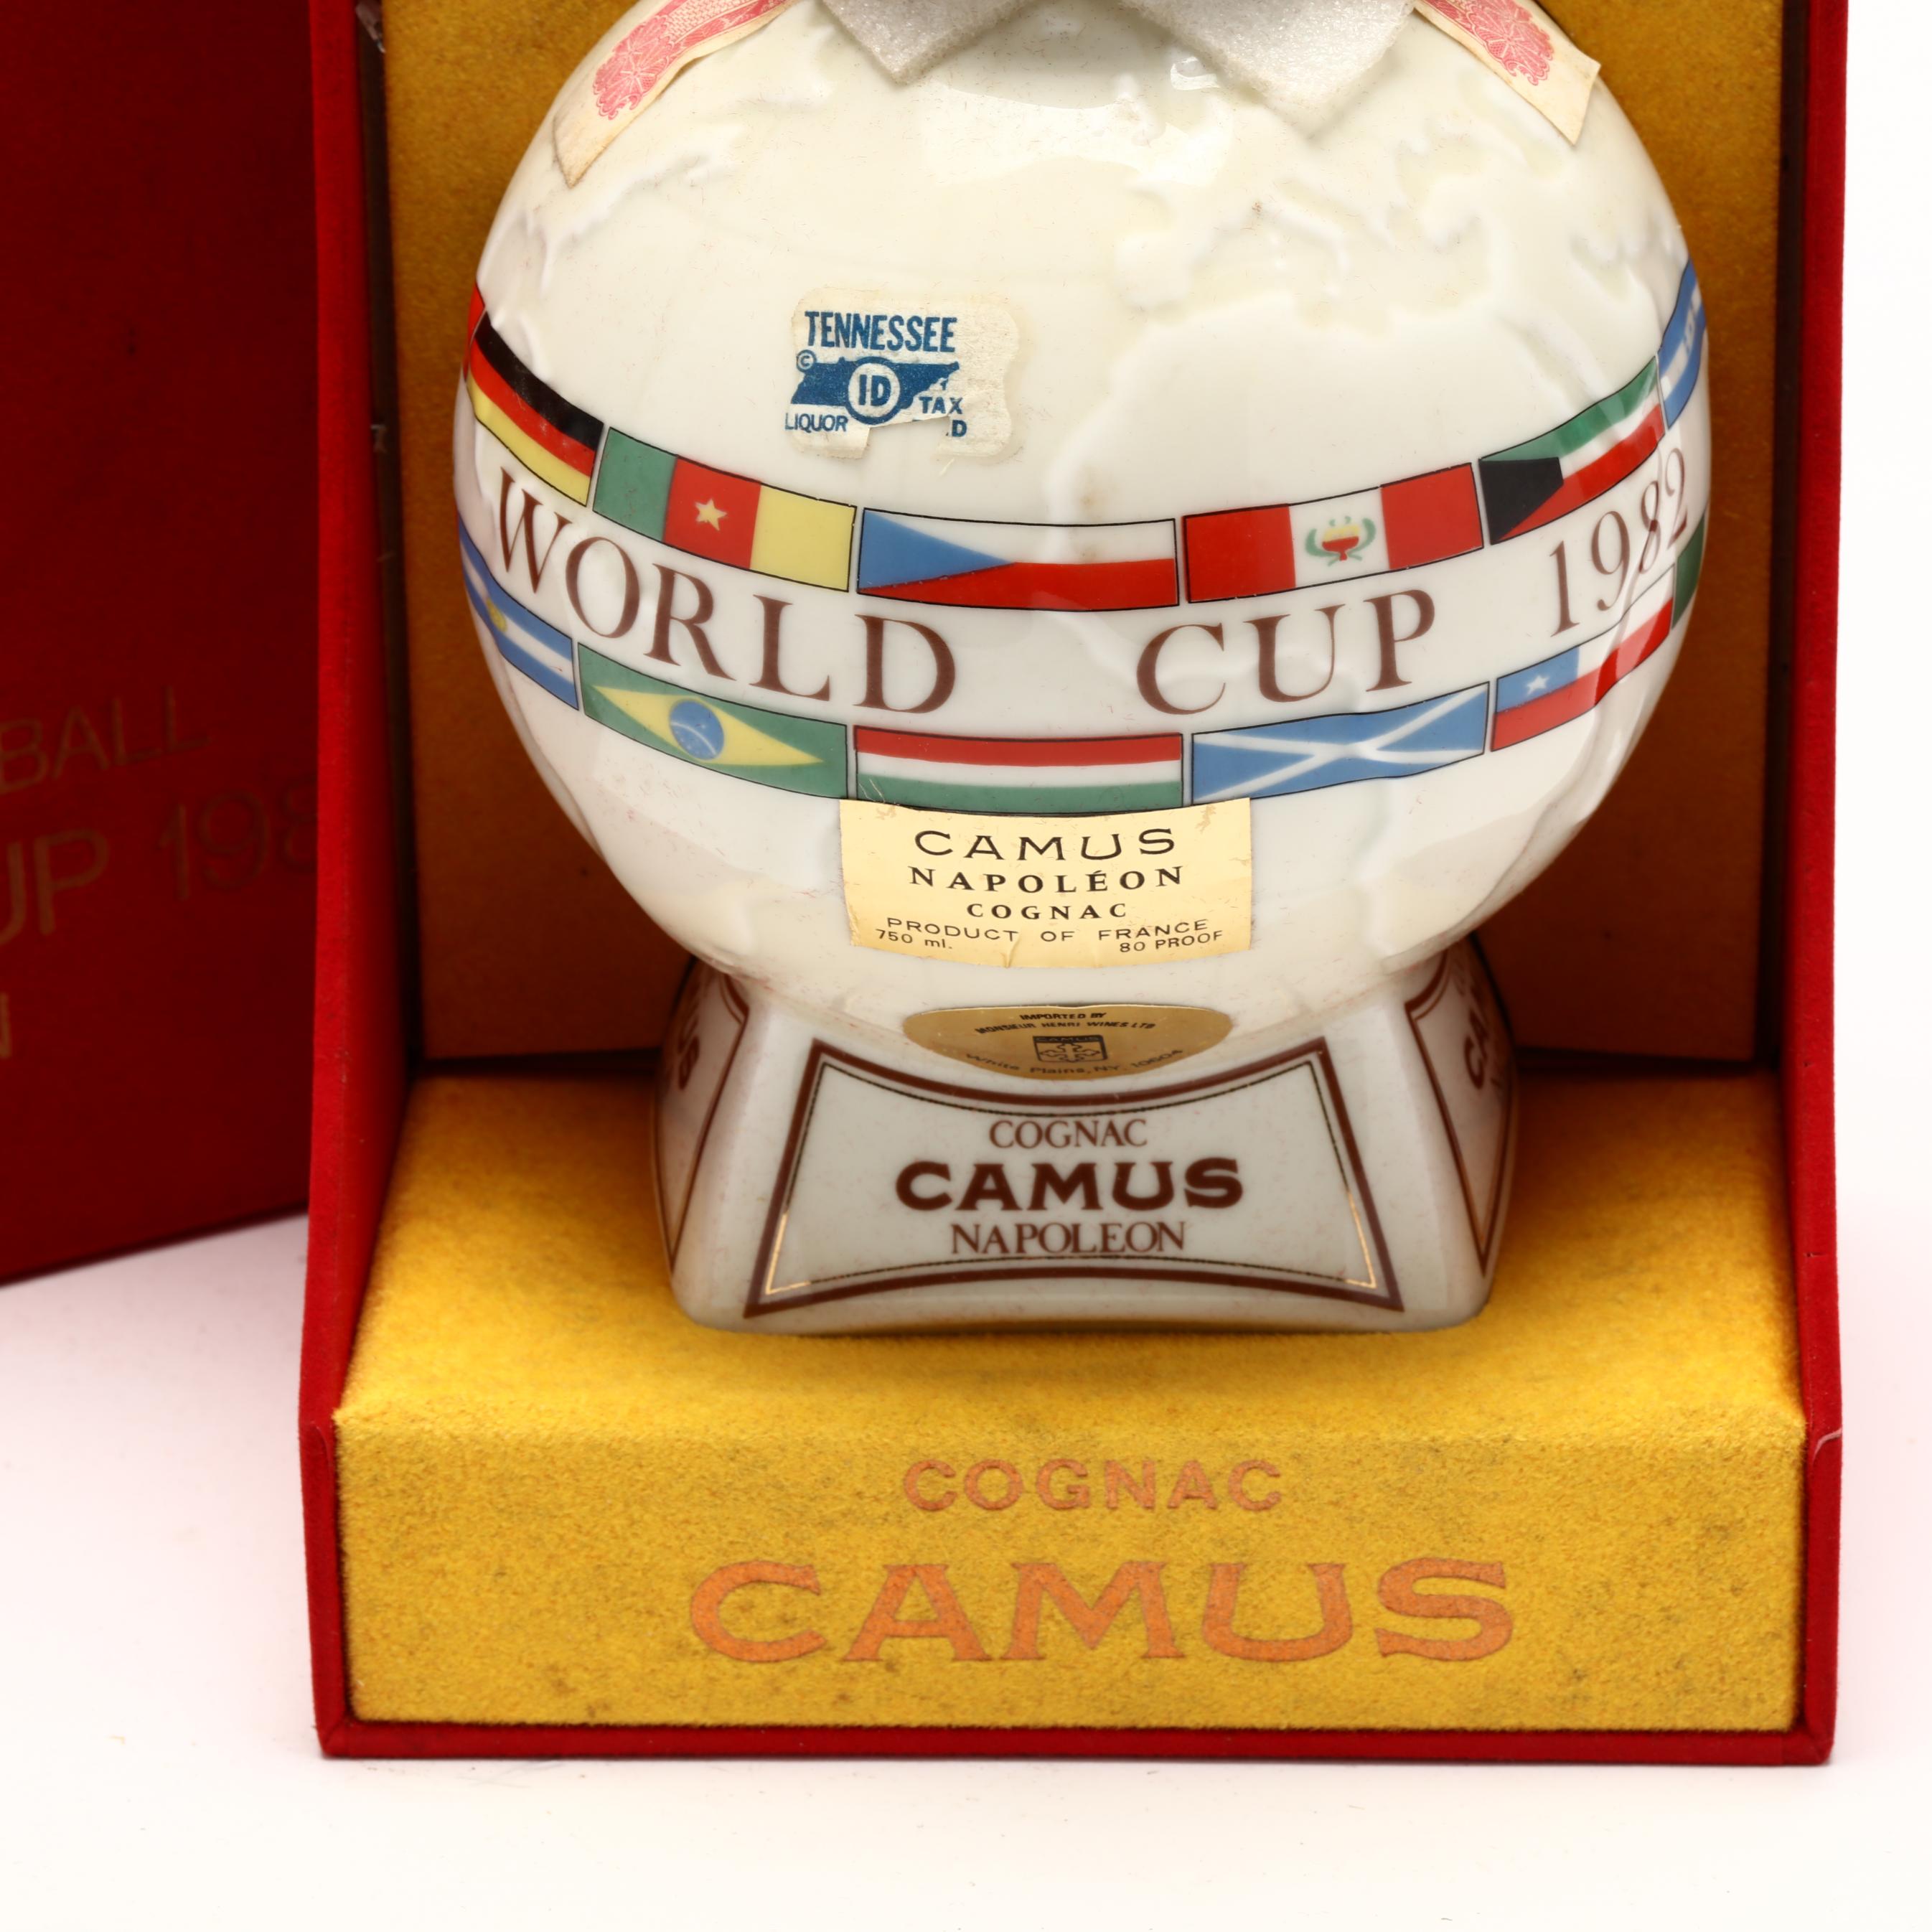 Camus Napoleon Cognac in 1982 World Cup Porcelain Decanter (Lot 